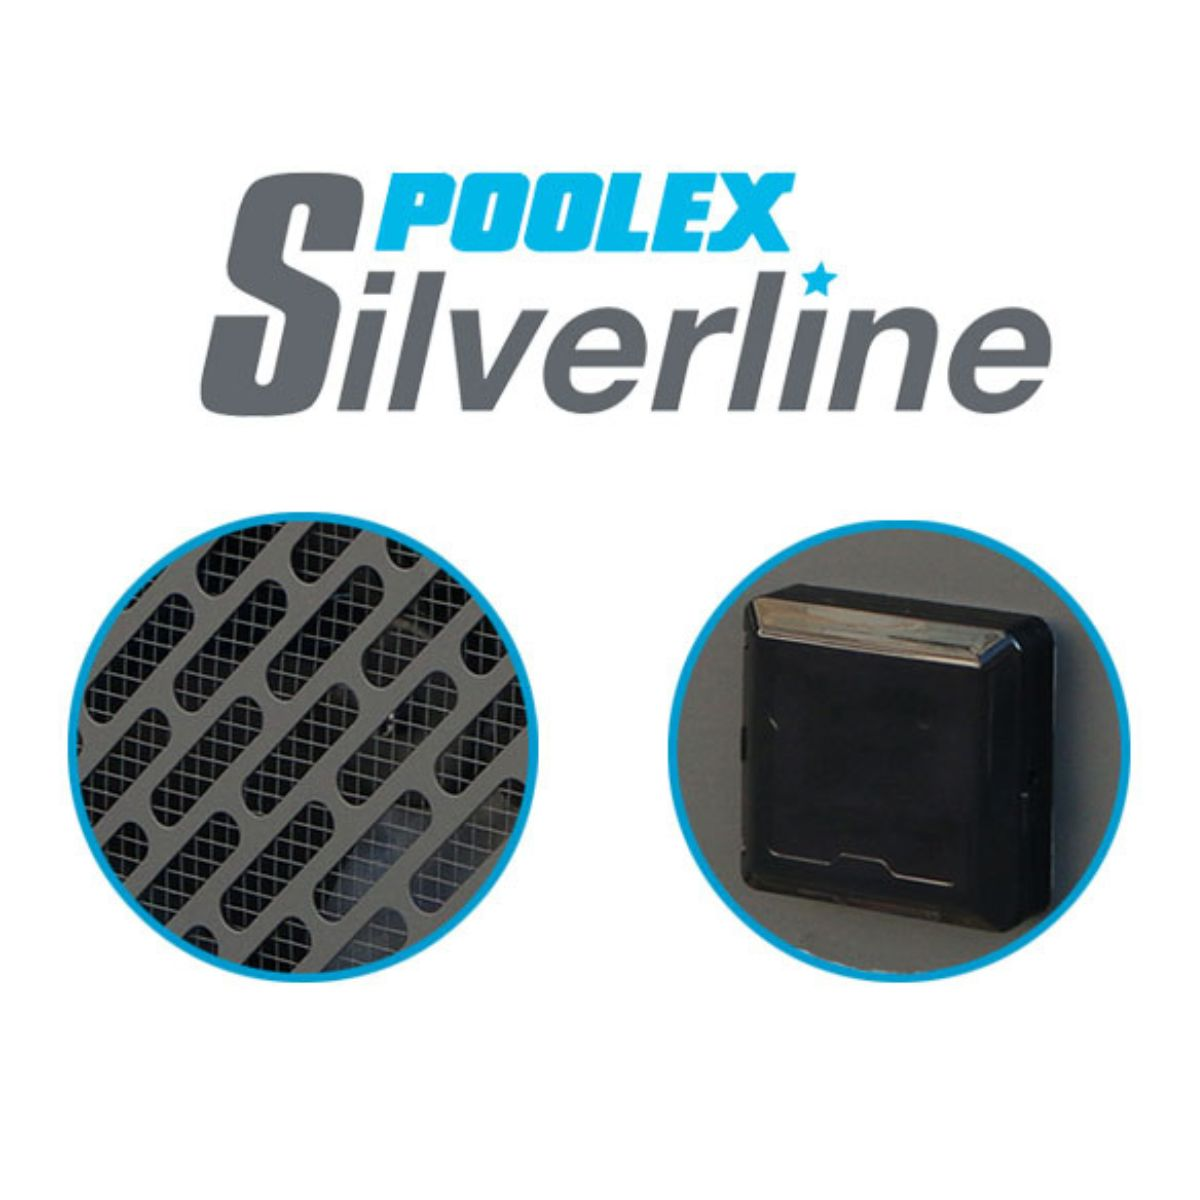 POOLEX 90 Schwimmbadpumpe Silverline